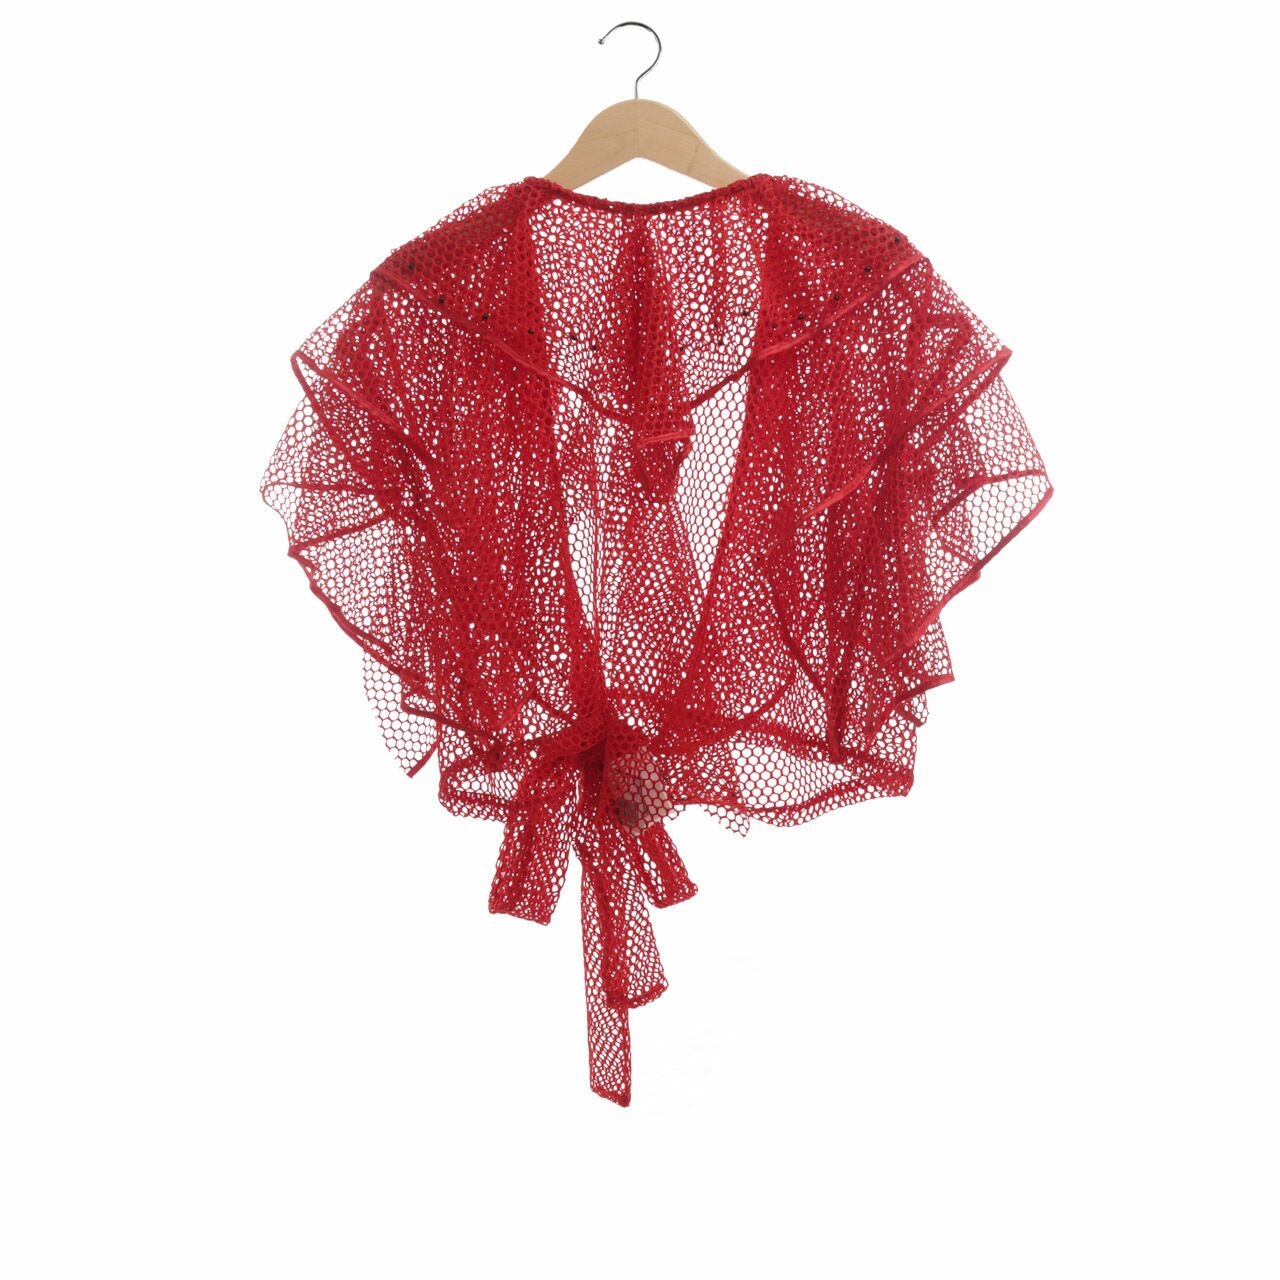 Douche Red Perorated Ruffle Kimono